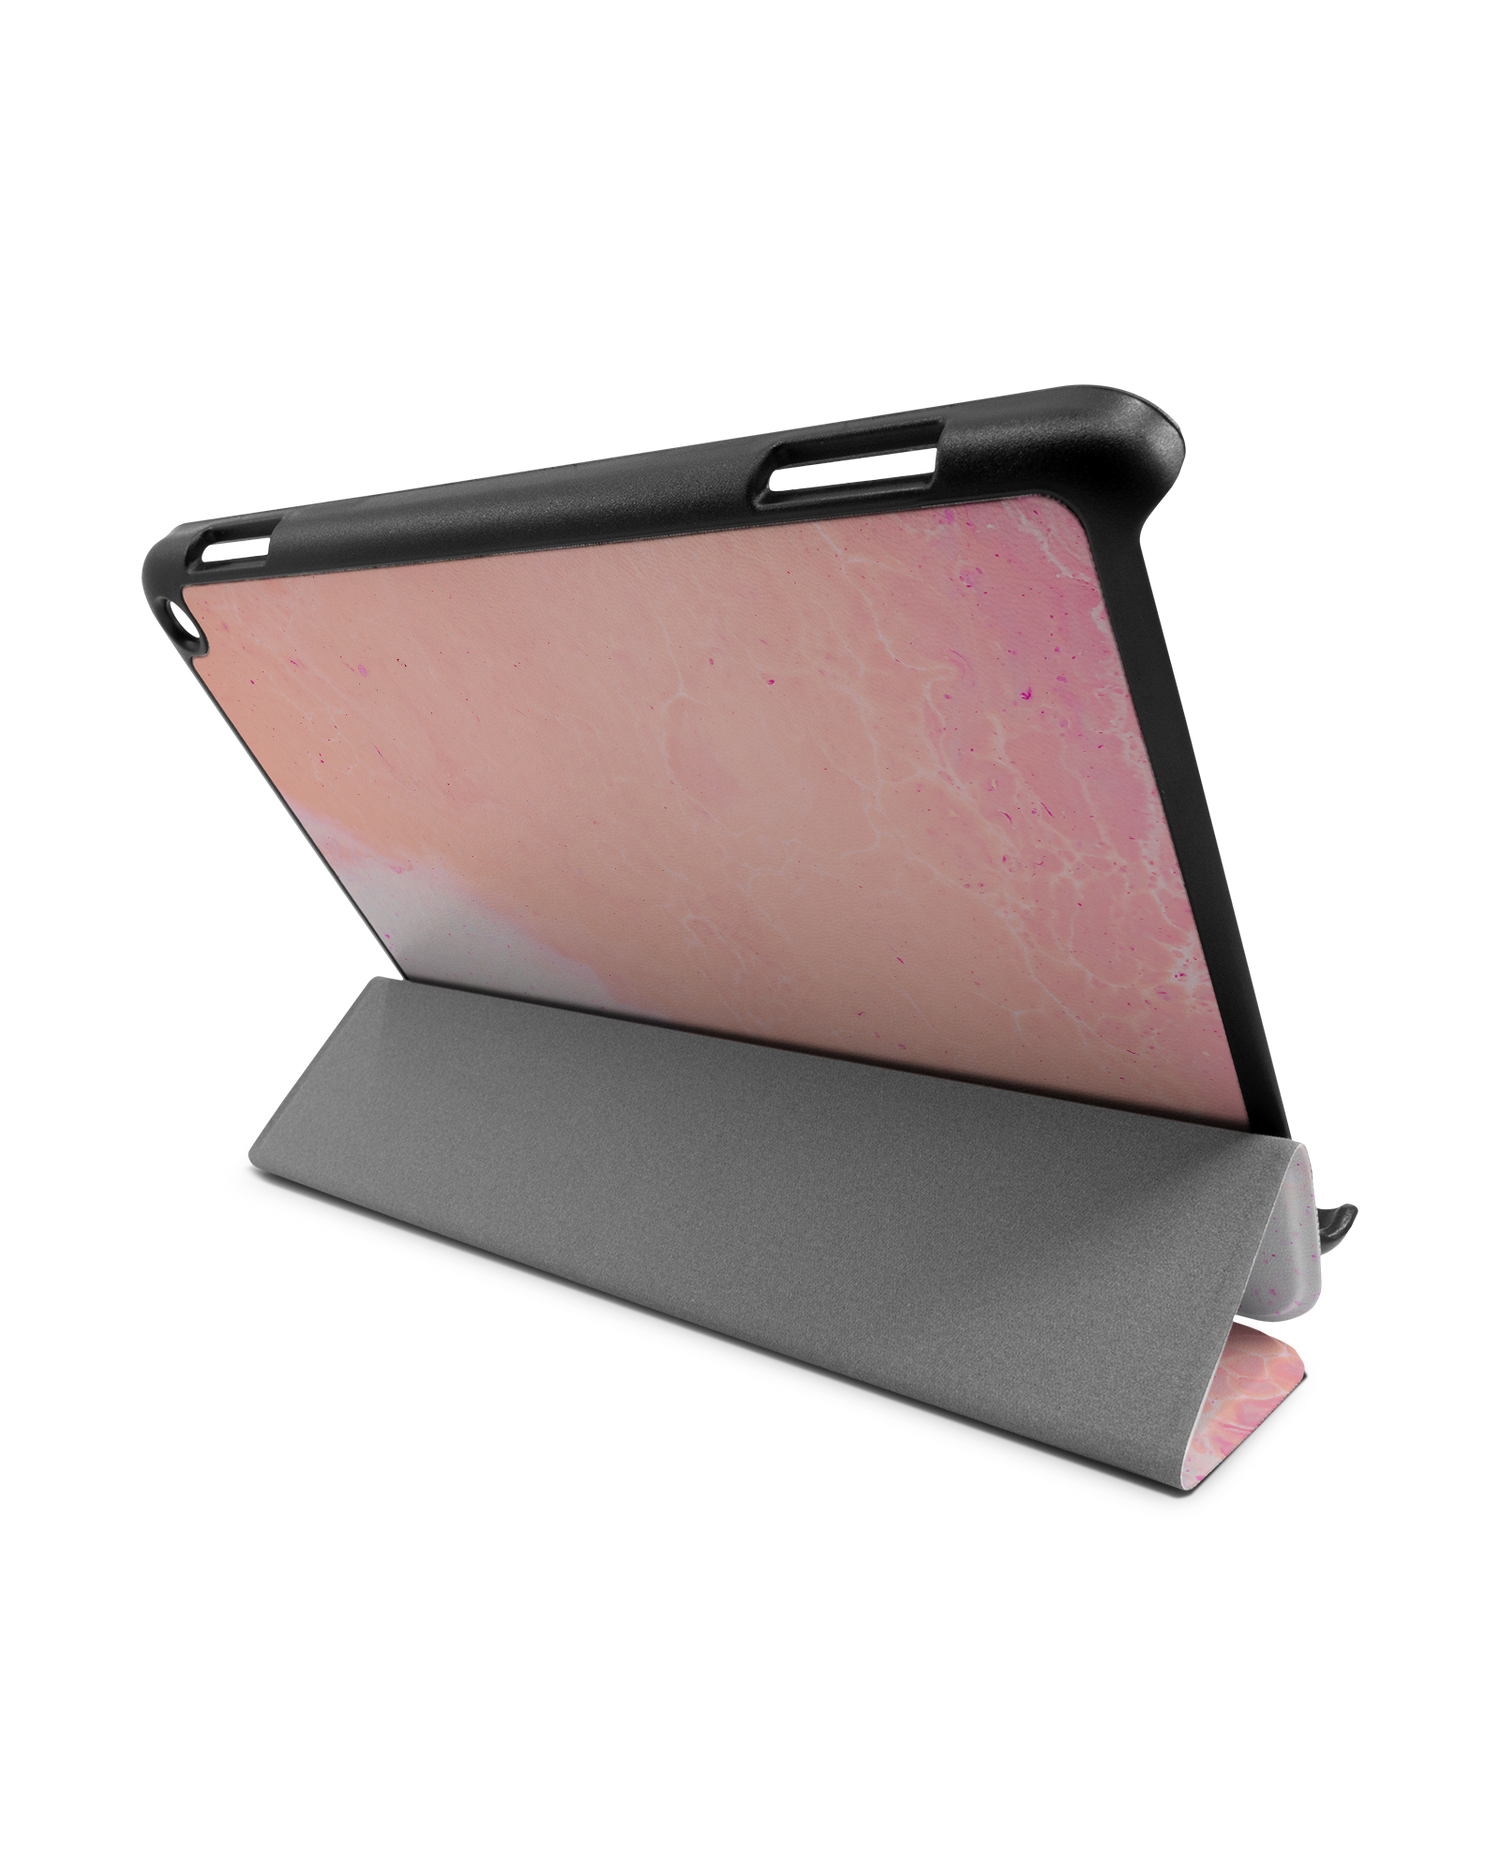 Peaches & Cream Marble Tablet Smart Case für Amazon Fire HD 8 (2022), Amazon Fire HD 8 Plus (2022), Amazon Fire HD 8 (2020), Amazon Fire HD 8 Plus (2020): Aufgestellt im Querformat